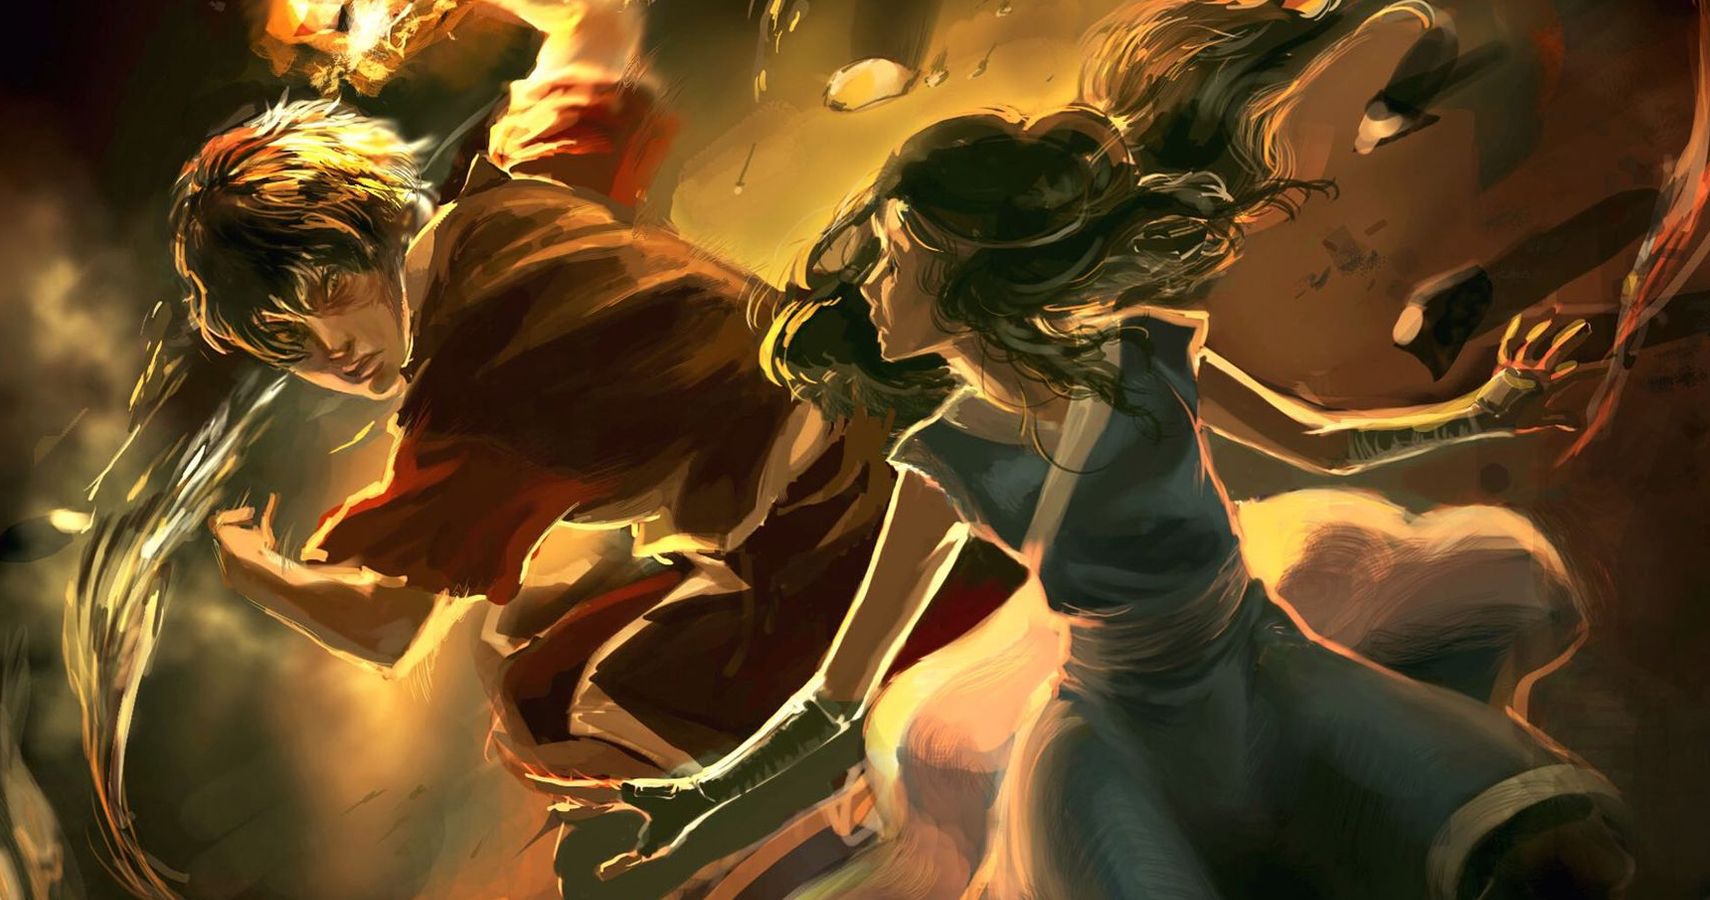 ArtStation - Legend of Korra meets Aang